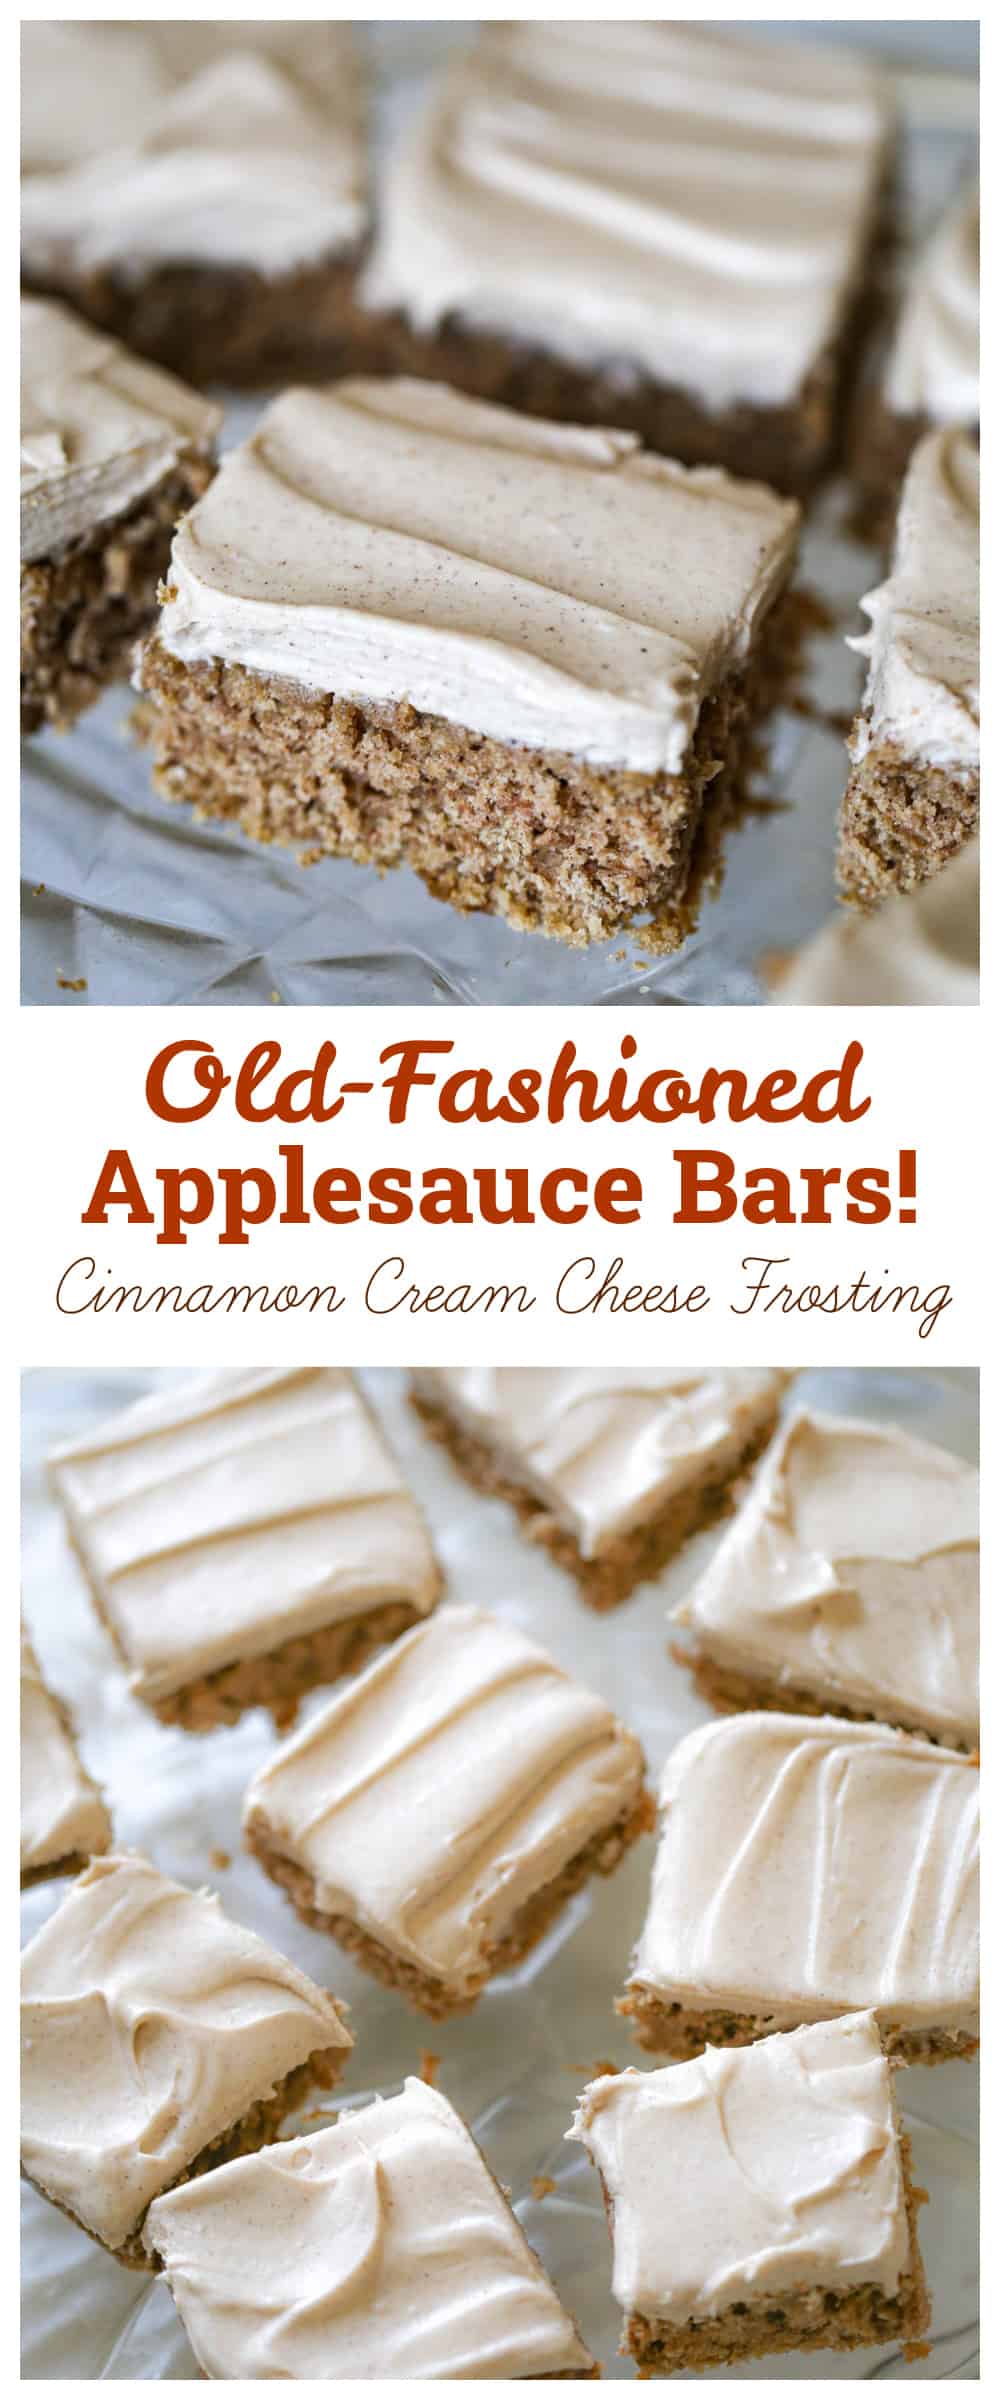 Easy Applesauce Bars